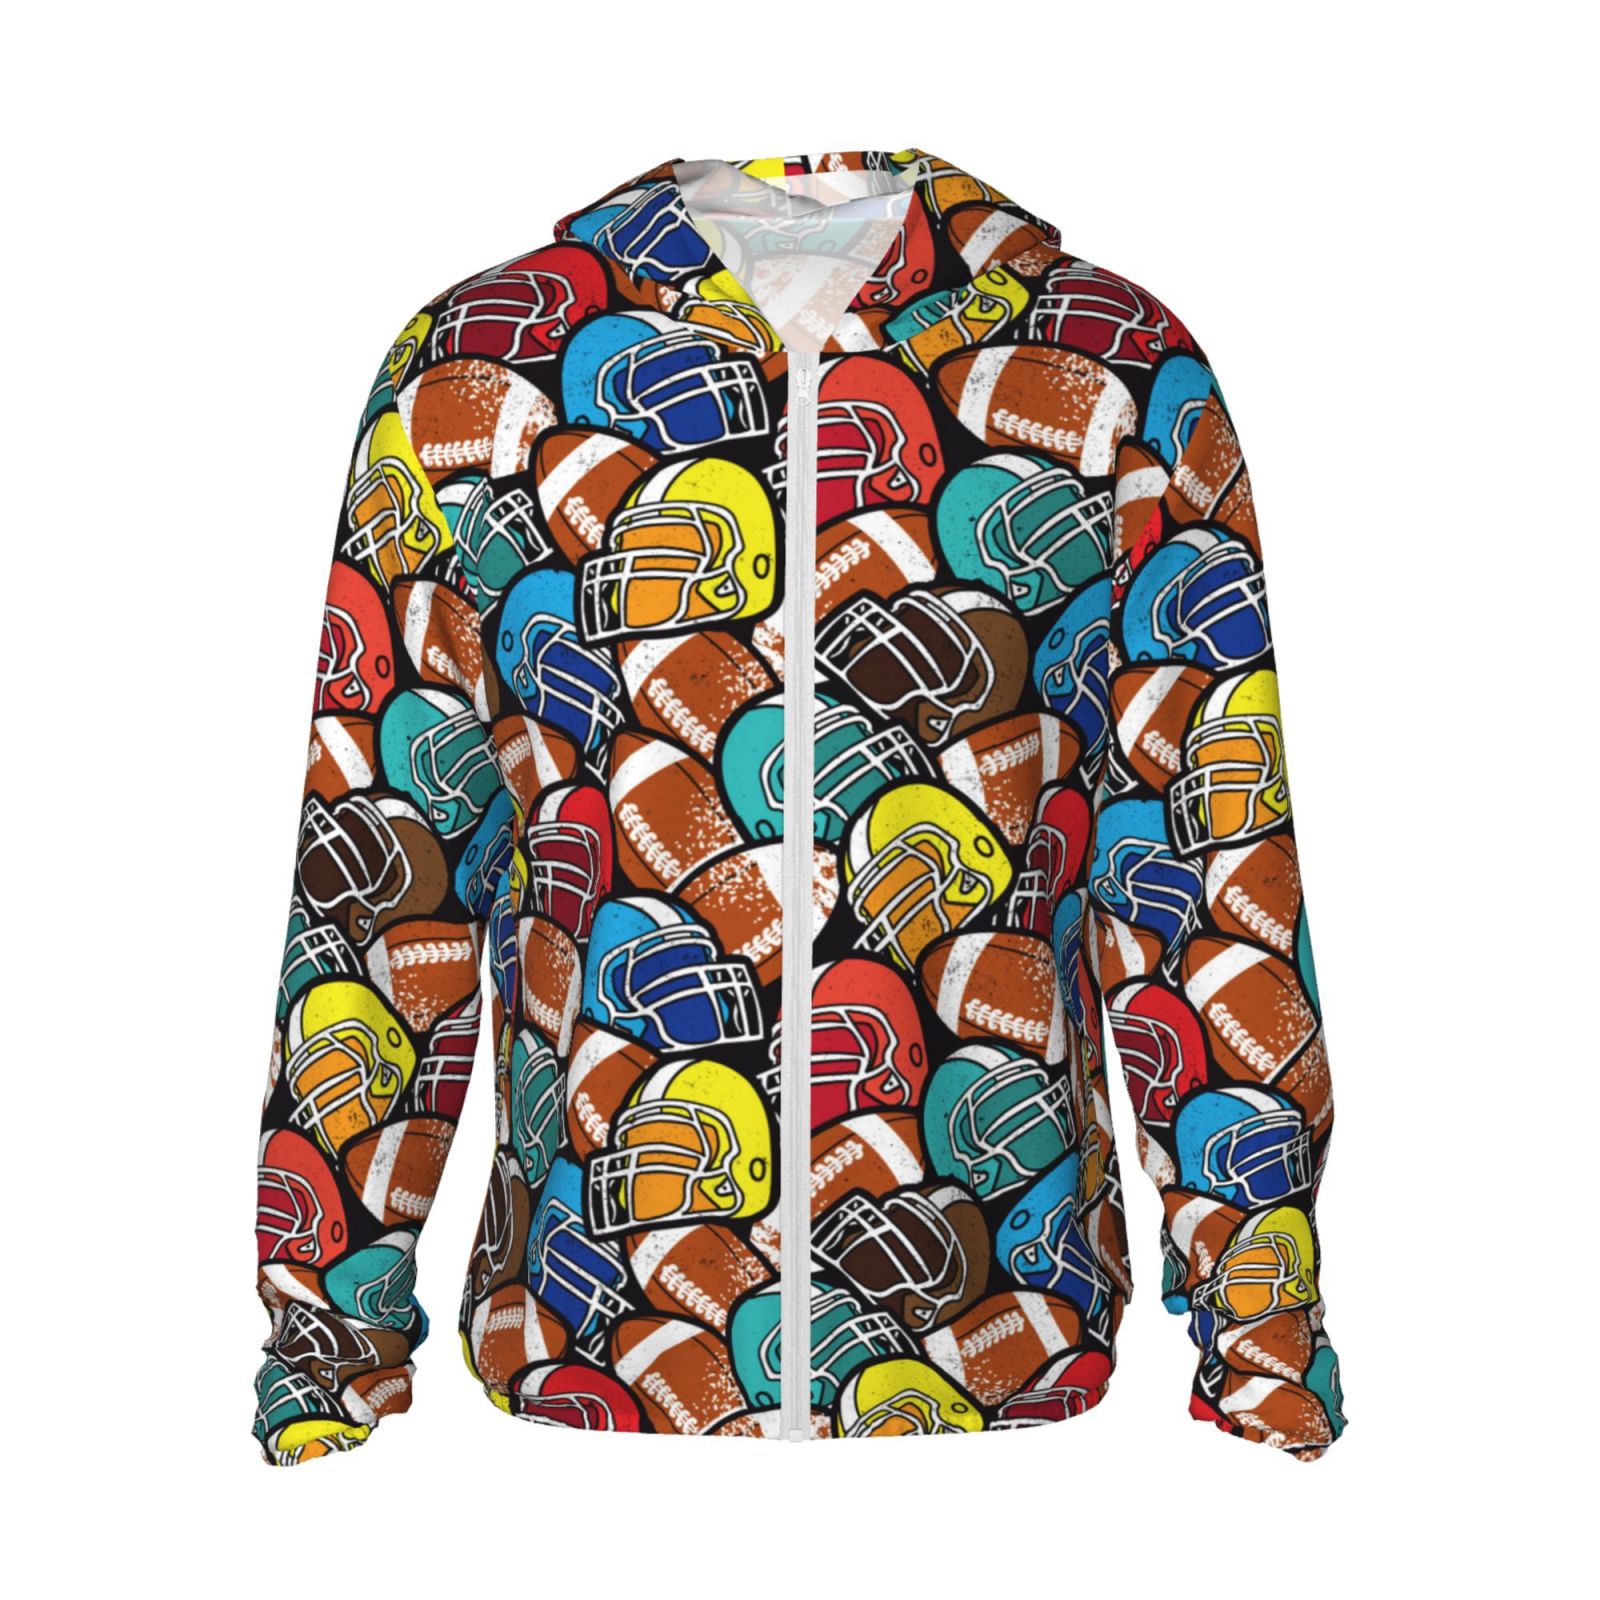 Haiem American Football UPF 50+ Fishing Shirts for Men Long Sleeve UV ...